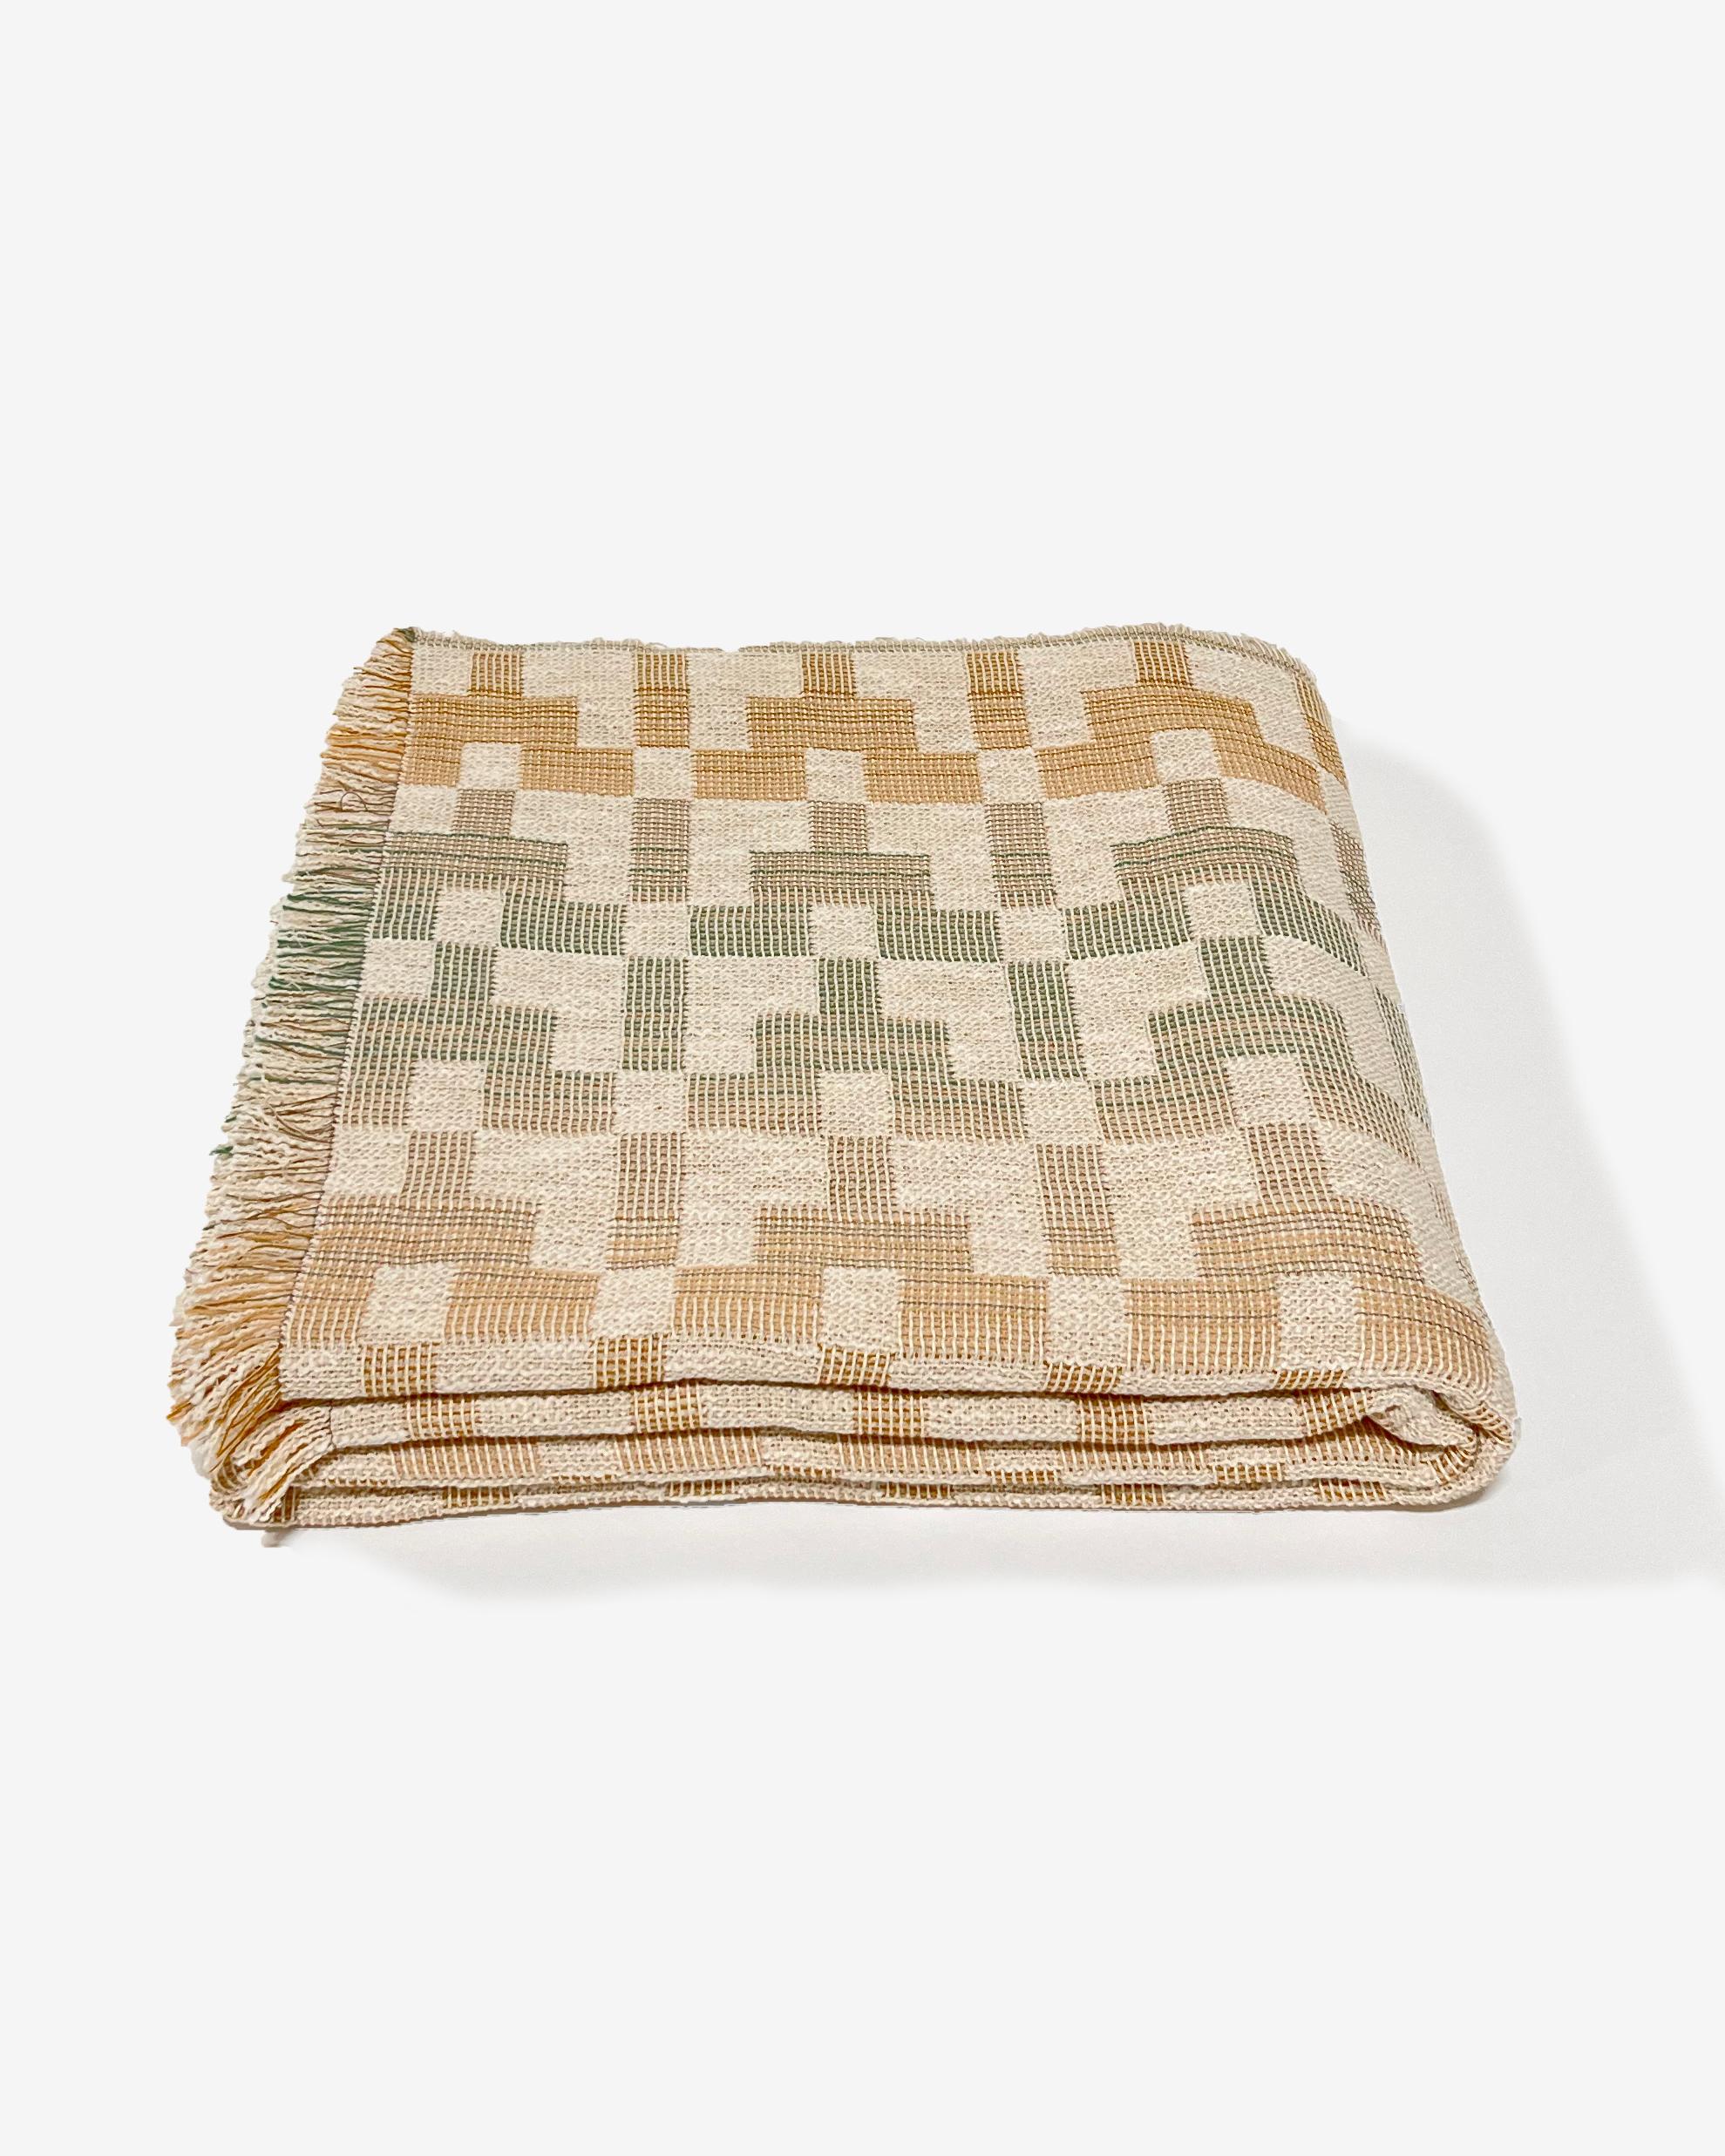 La couverture 'Esme' a été conçue par Folk Textiles, une marque basée à Los Angeles qui se consacre à l'art de vivre. Ce textile est tissé sur un métier à tisser Dobby au Royaume-Uni à partir de coton biologique teint de manière durable en